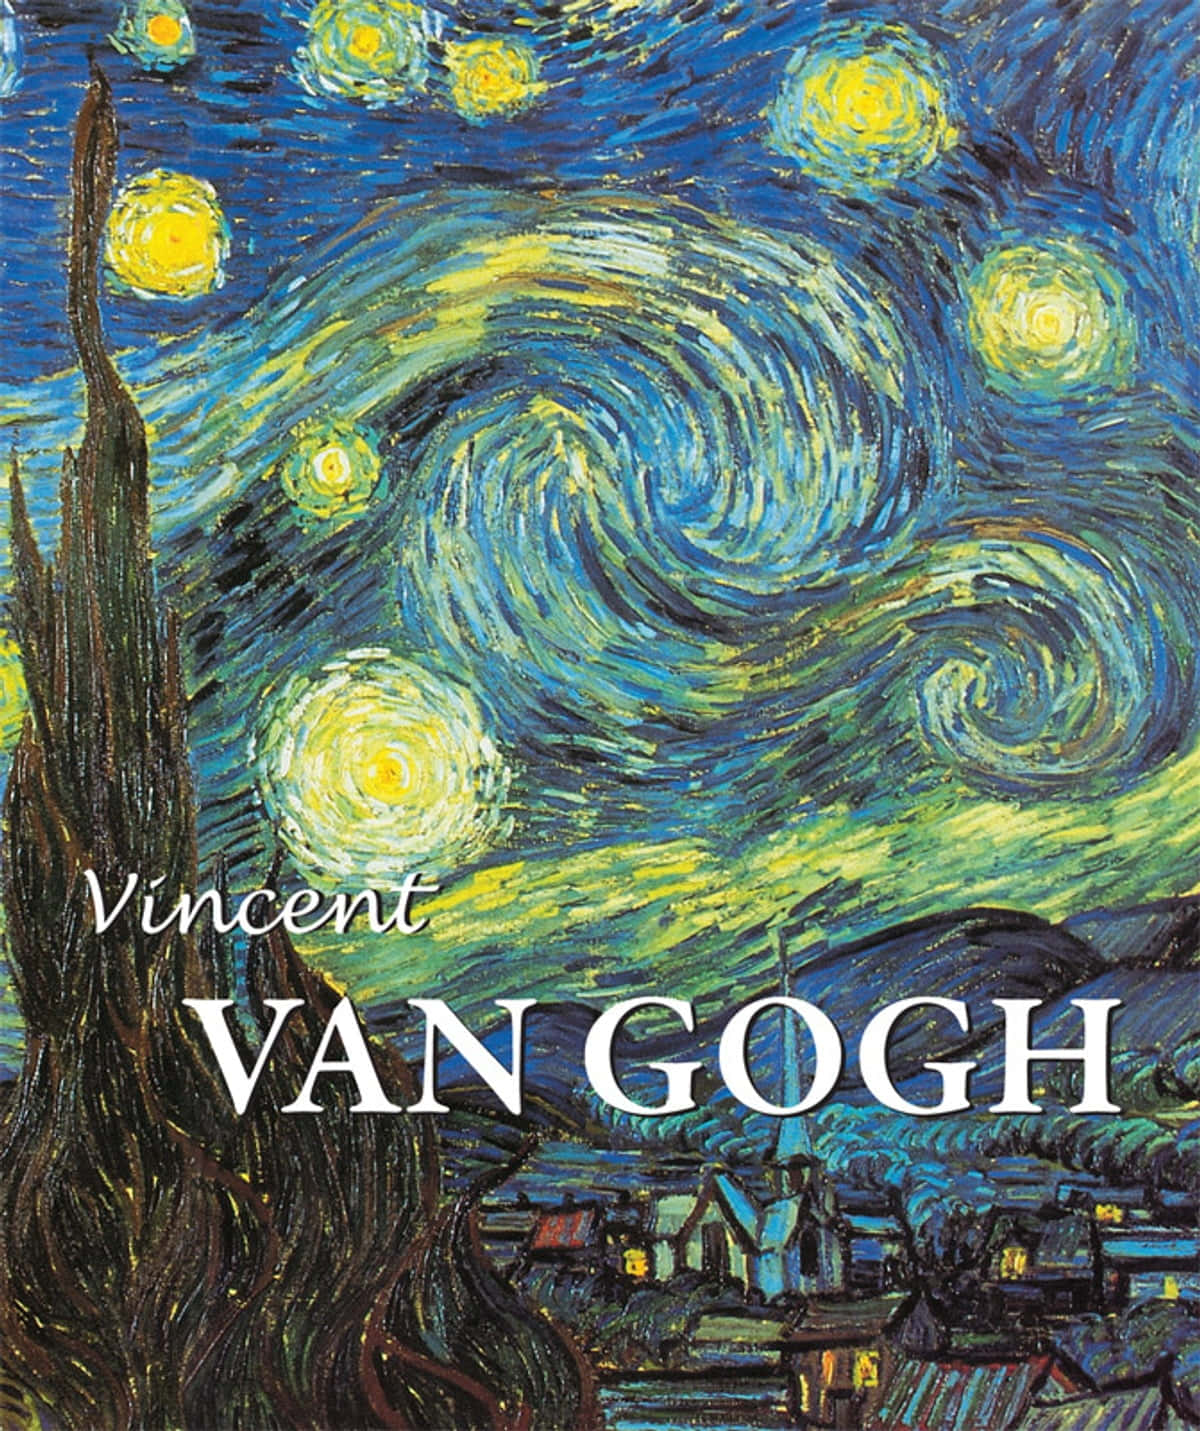 Vincentvan Goghs Valmuer.